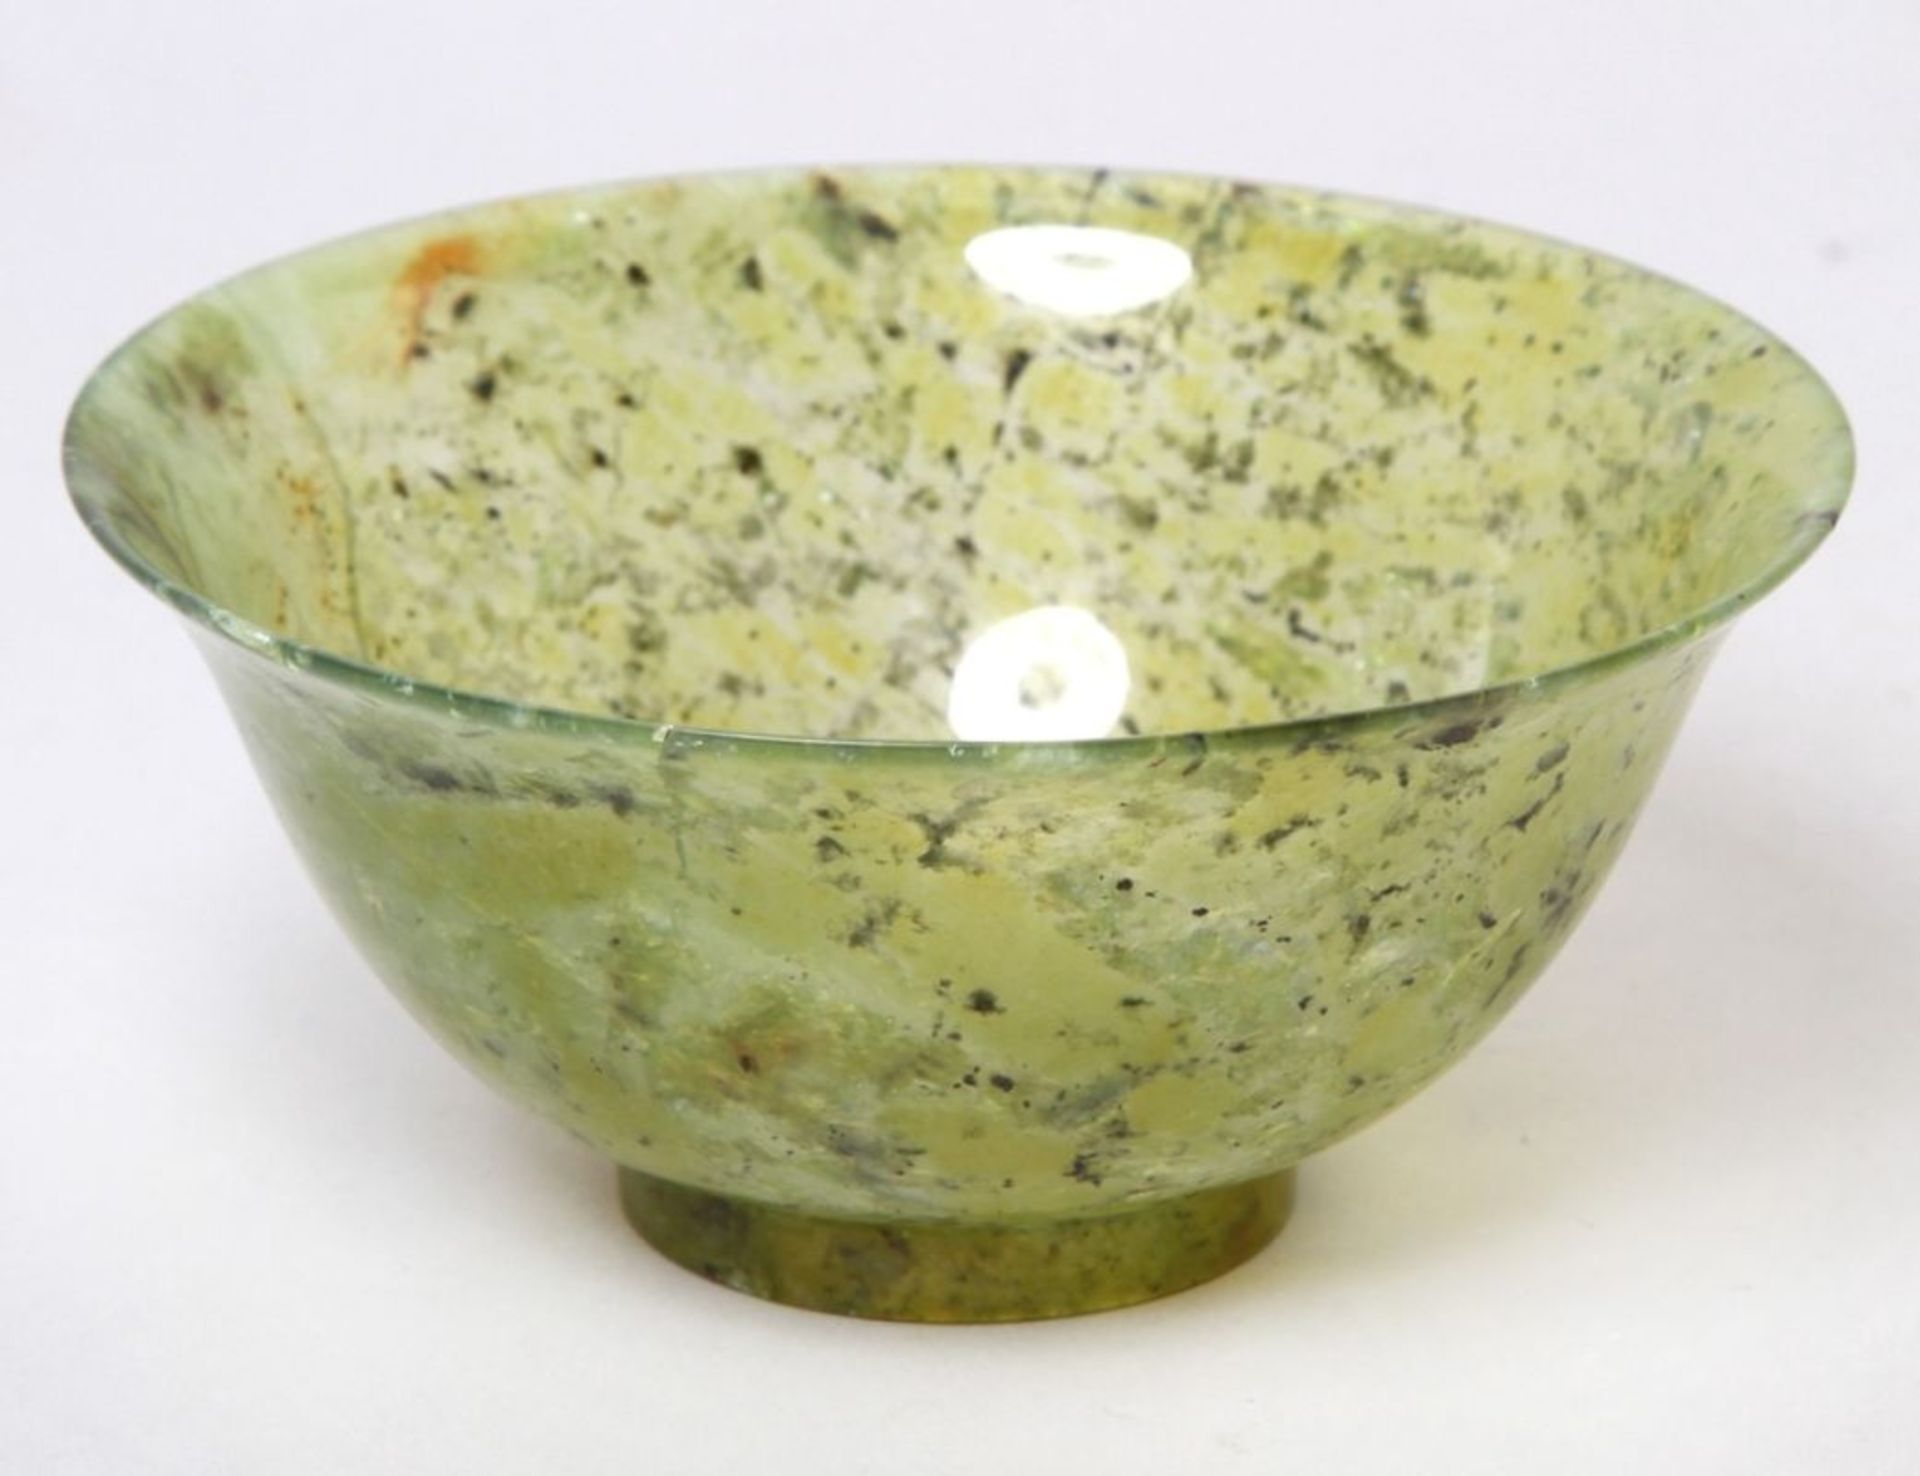 Jade-Kumme, China, gefleckt-gesprenkelte, grüne, dünnwandige, durchscheinende Jade mitÄderung, H 6